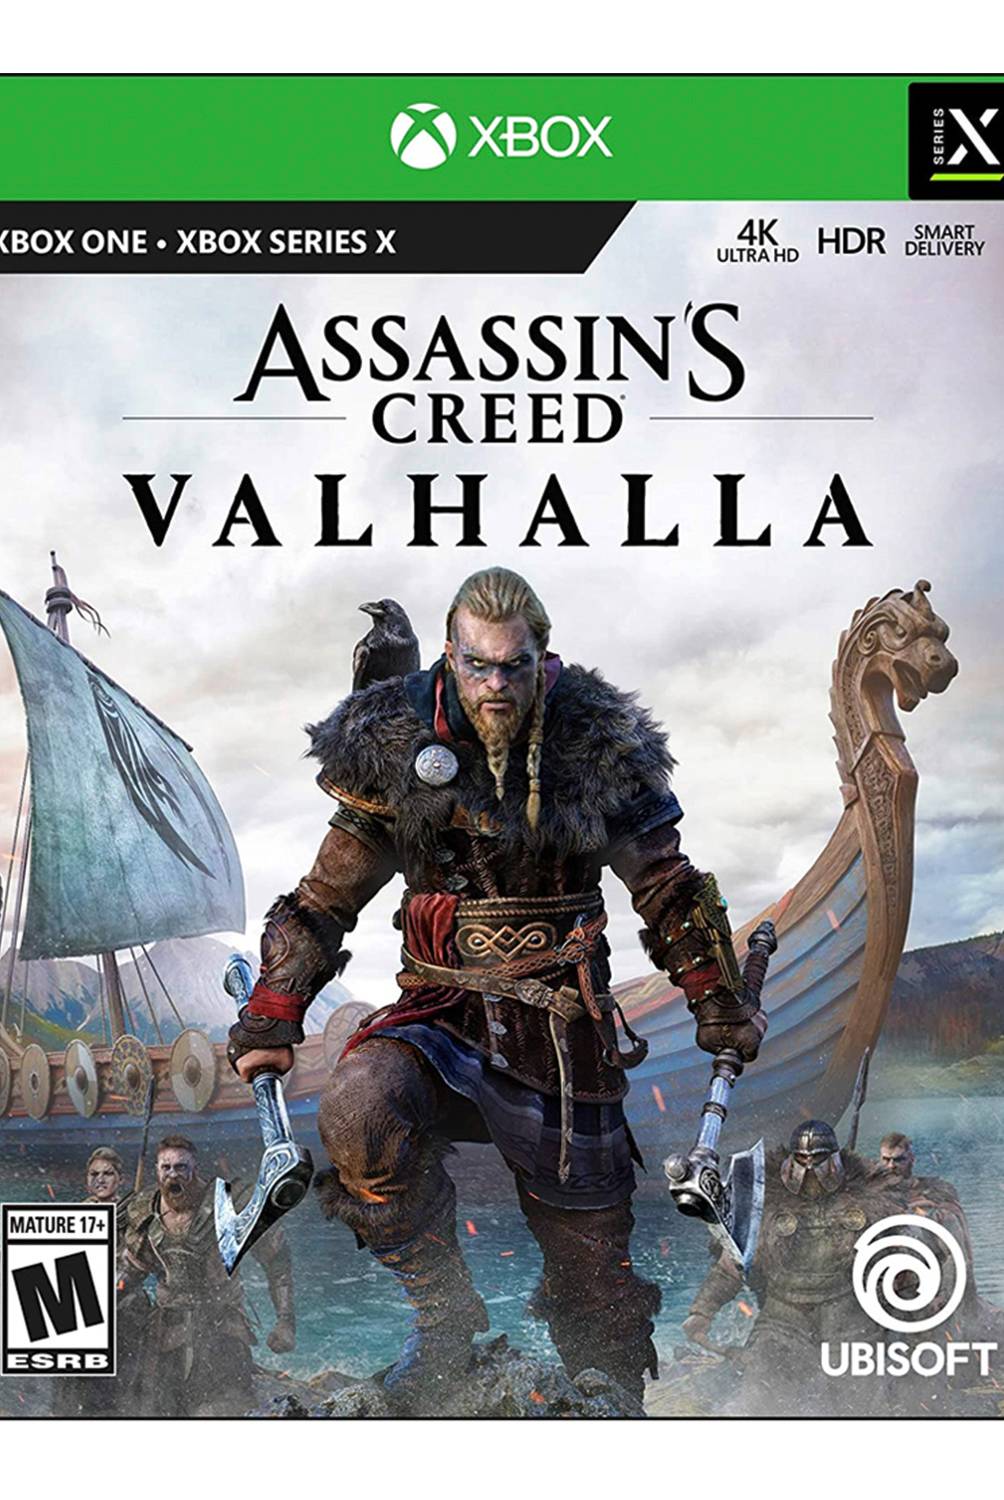 UBISOFT - Assassins Credd Valhalla Xbox One